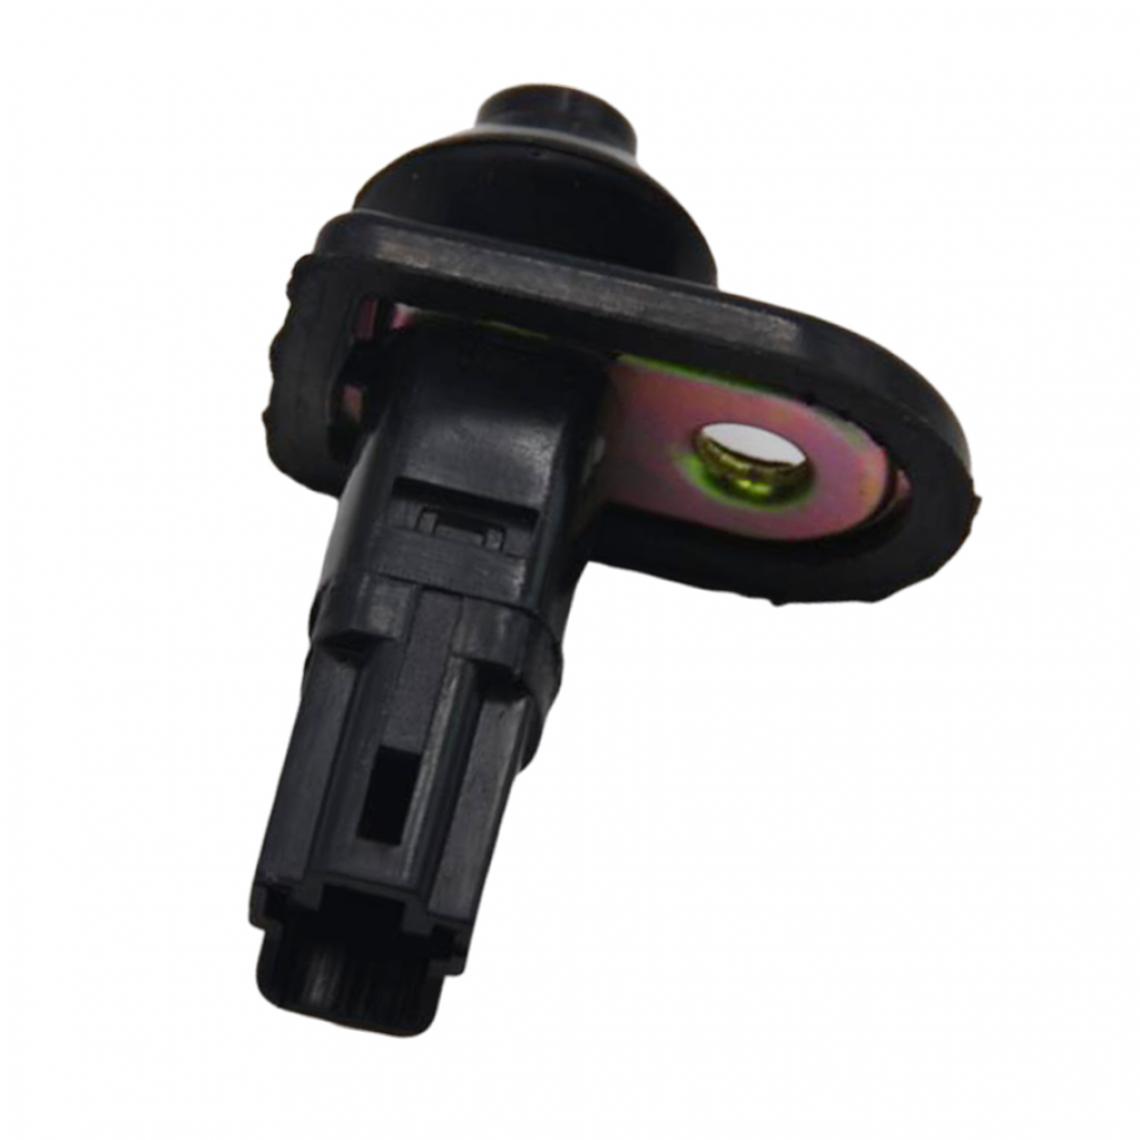 marque generique - Dome Light Jamb Switch Kit pour Mitsubishi Pajero, Référence: MB698713 - Accessoires et Pièces Détachées